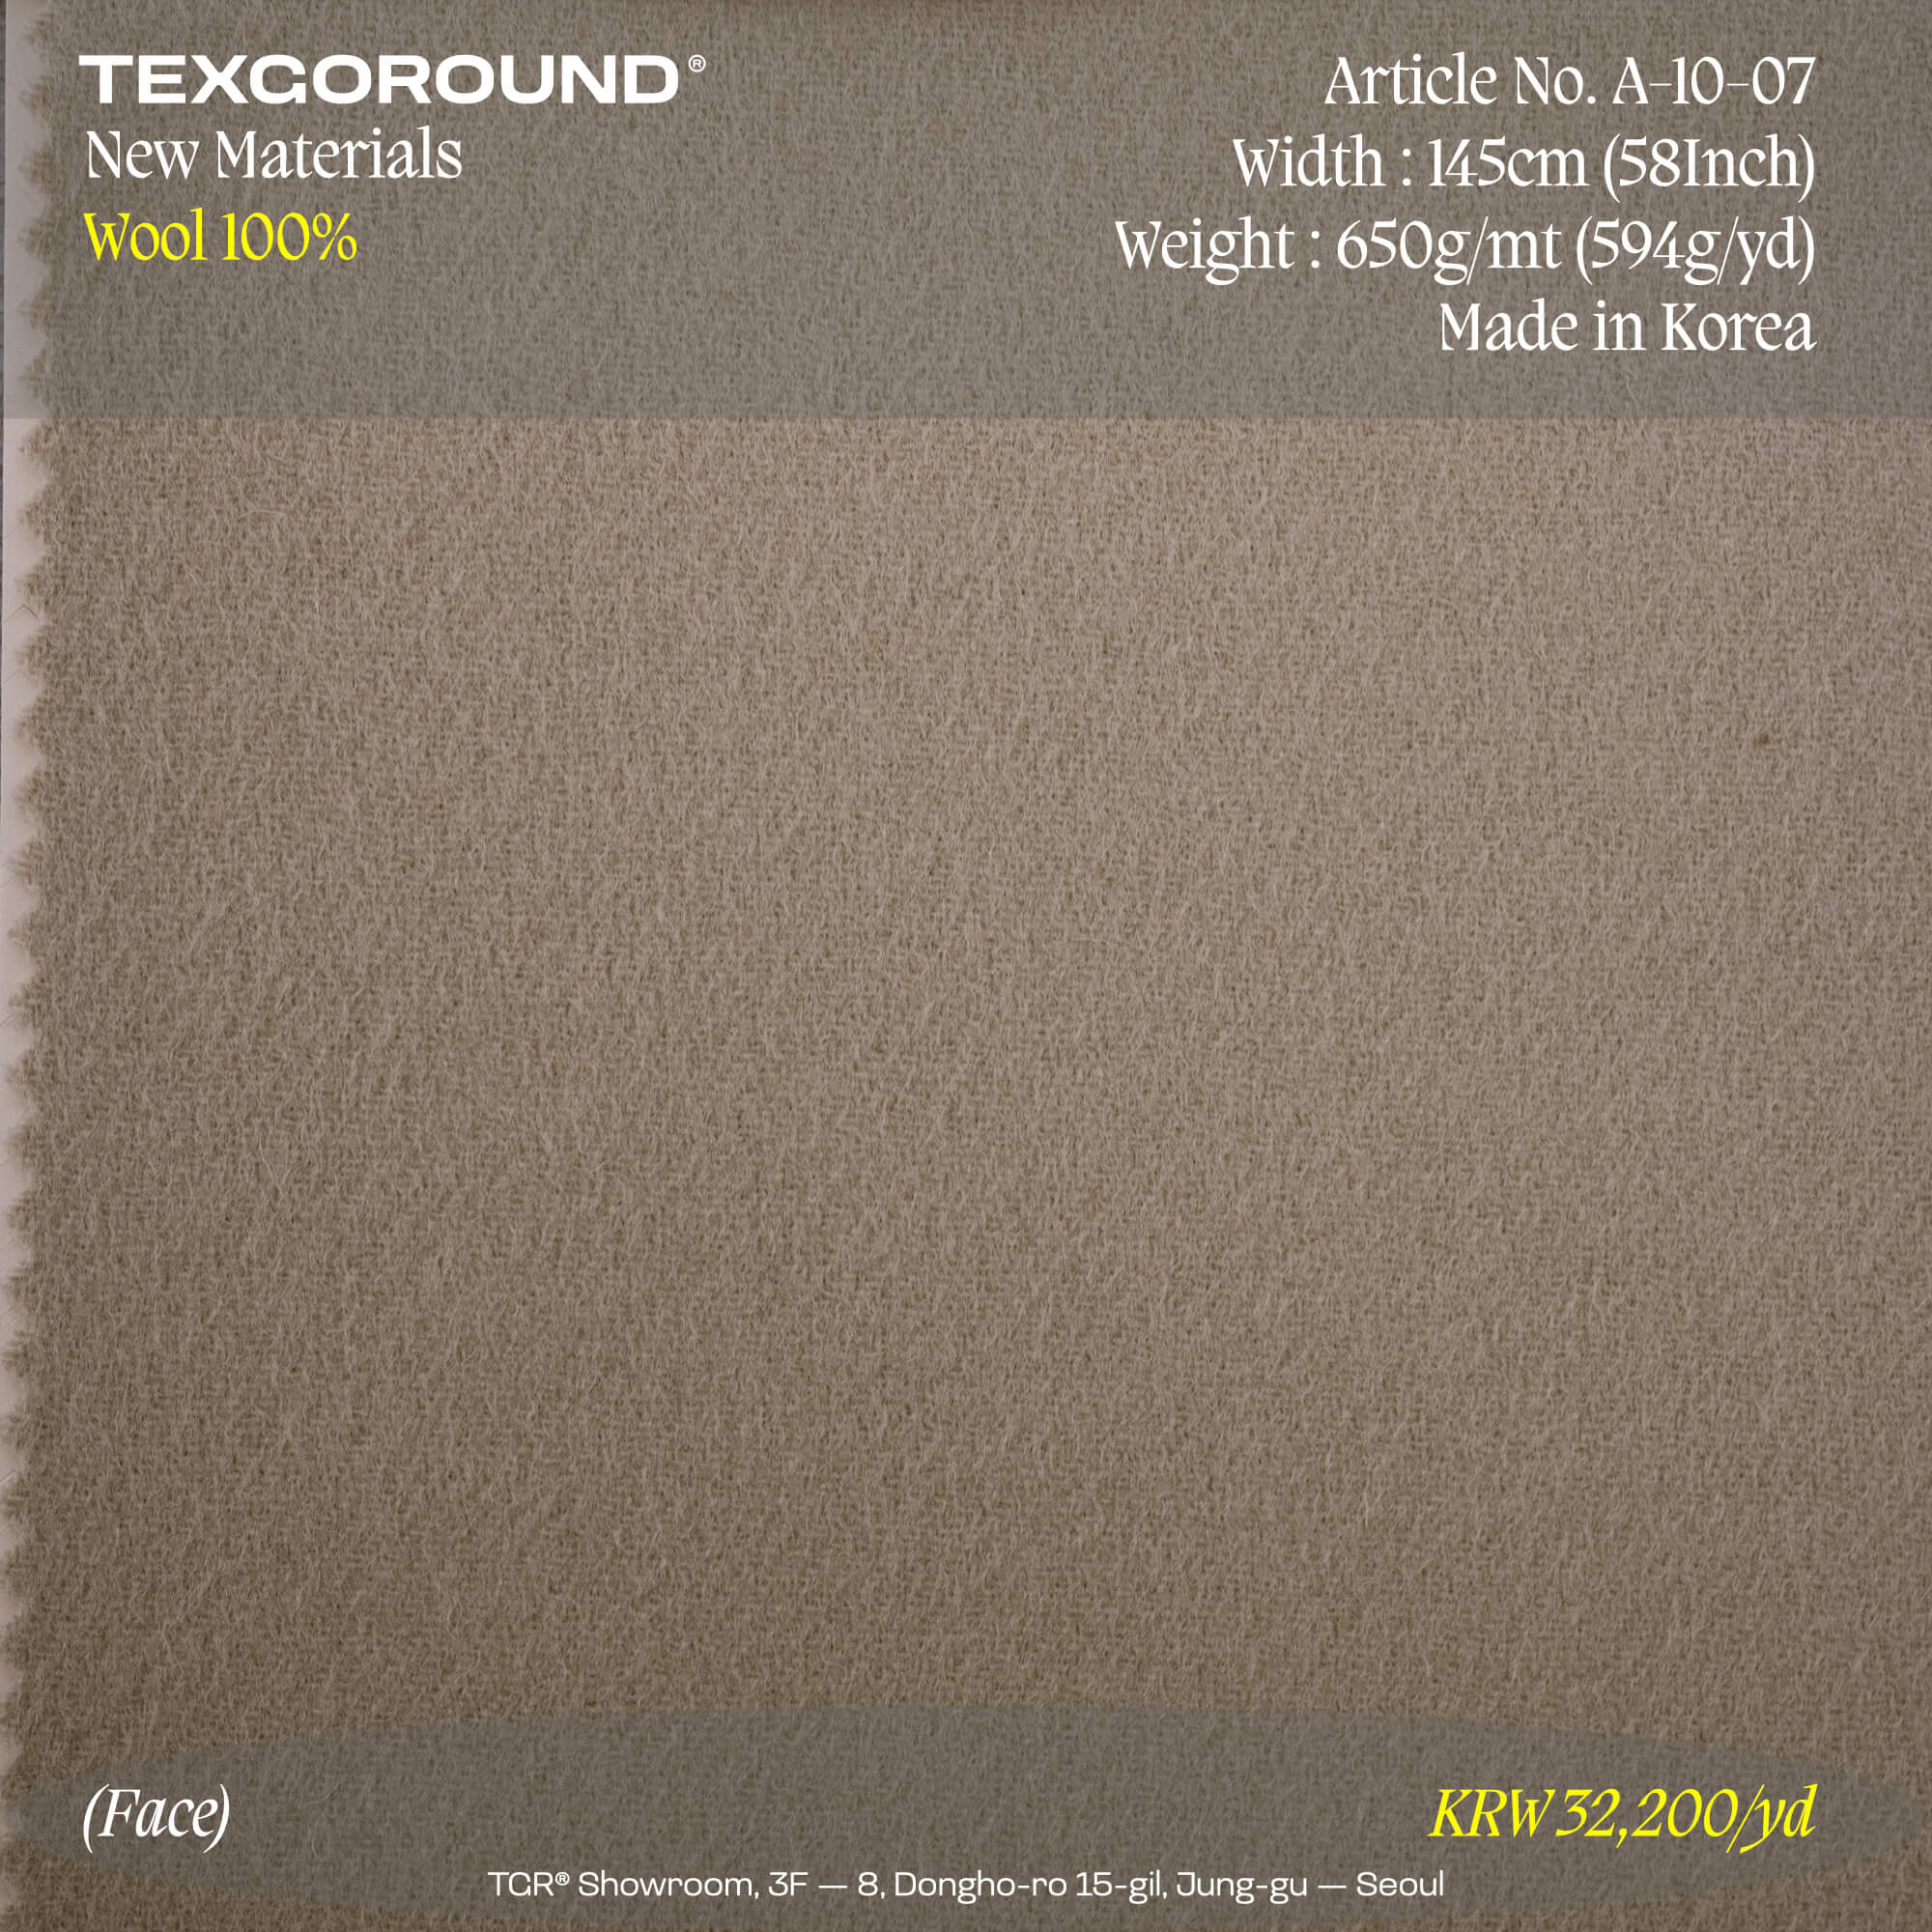 TEXGOROUND® New Materials (2) - Wool 100%